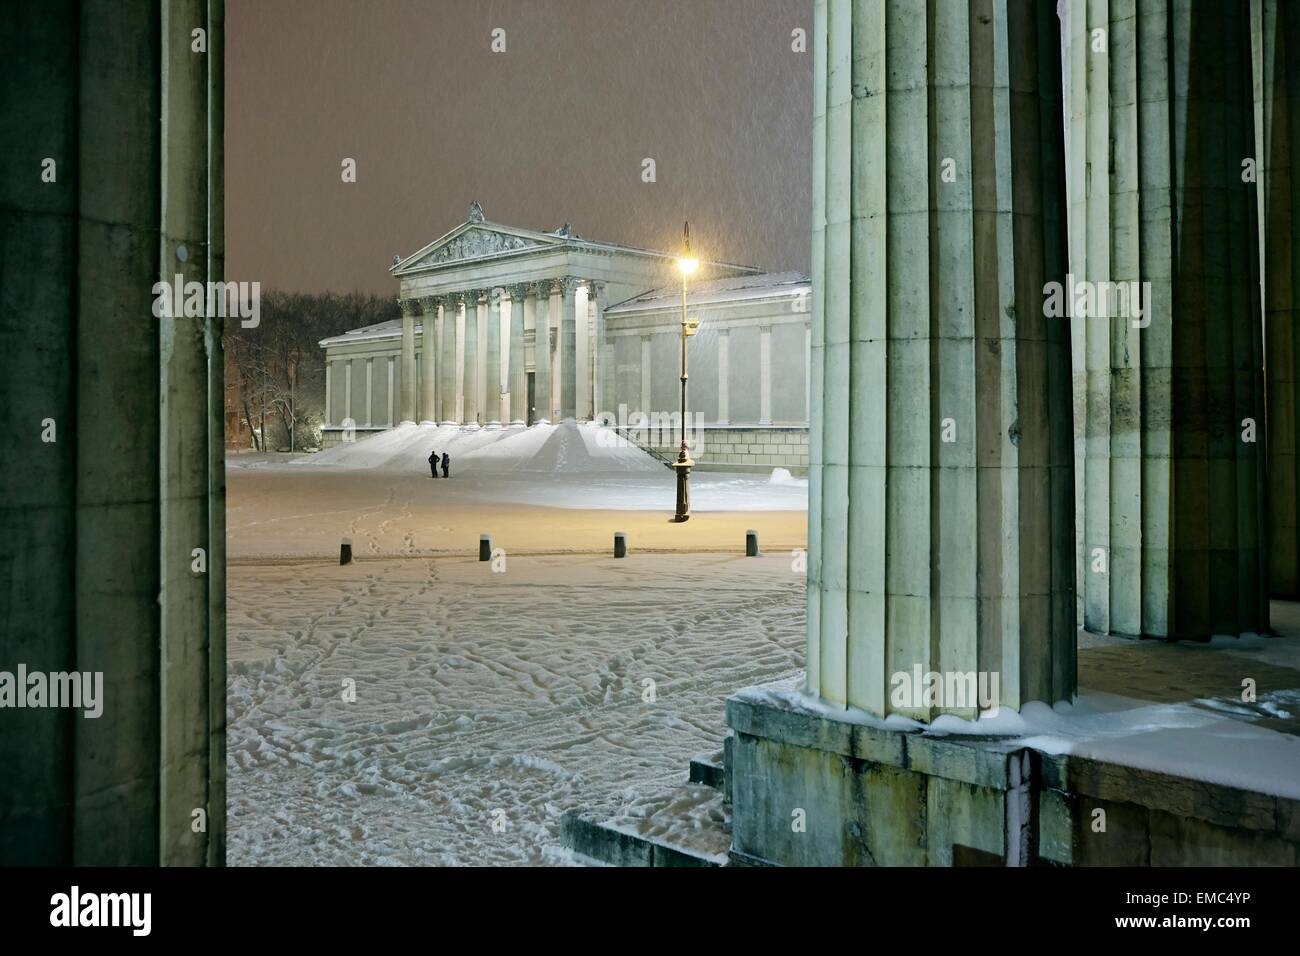 Germany, Munich, Staatliche Antikensammlung at Koenigsplatz in snow Stock Photo